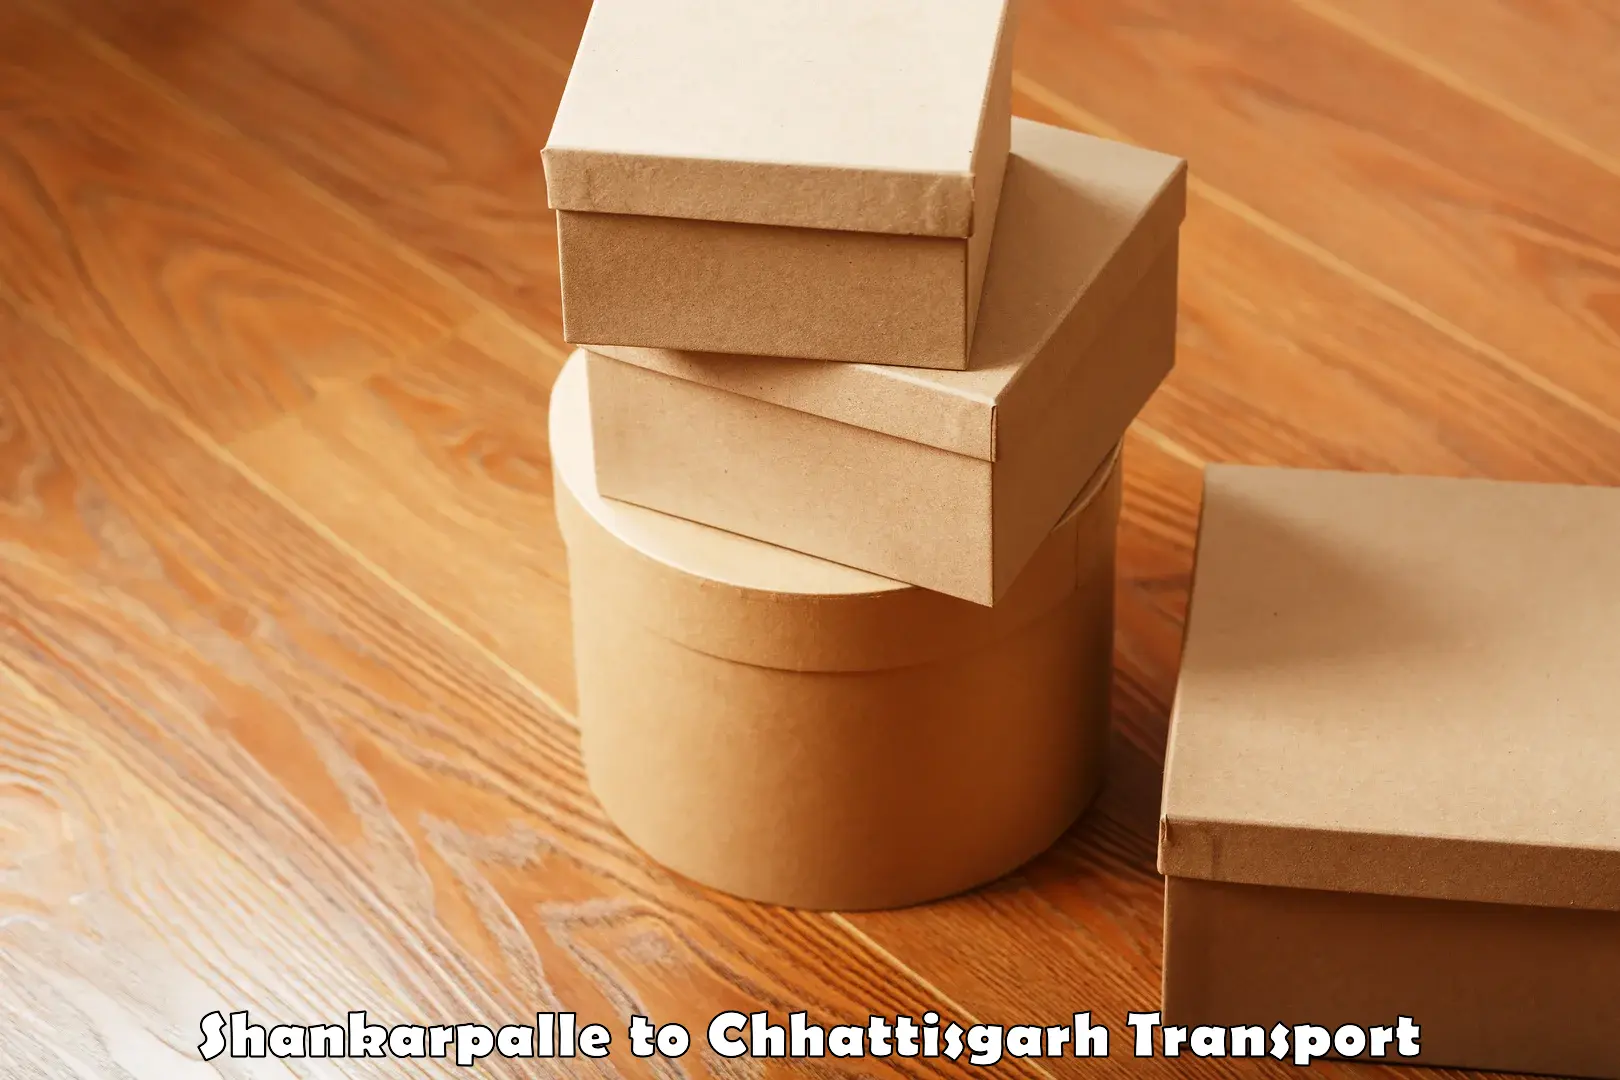 Furniture transport service in Shankarpalle to Raigarh Chhattisgarh